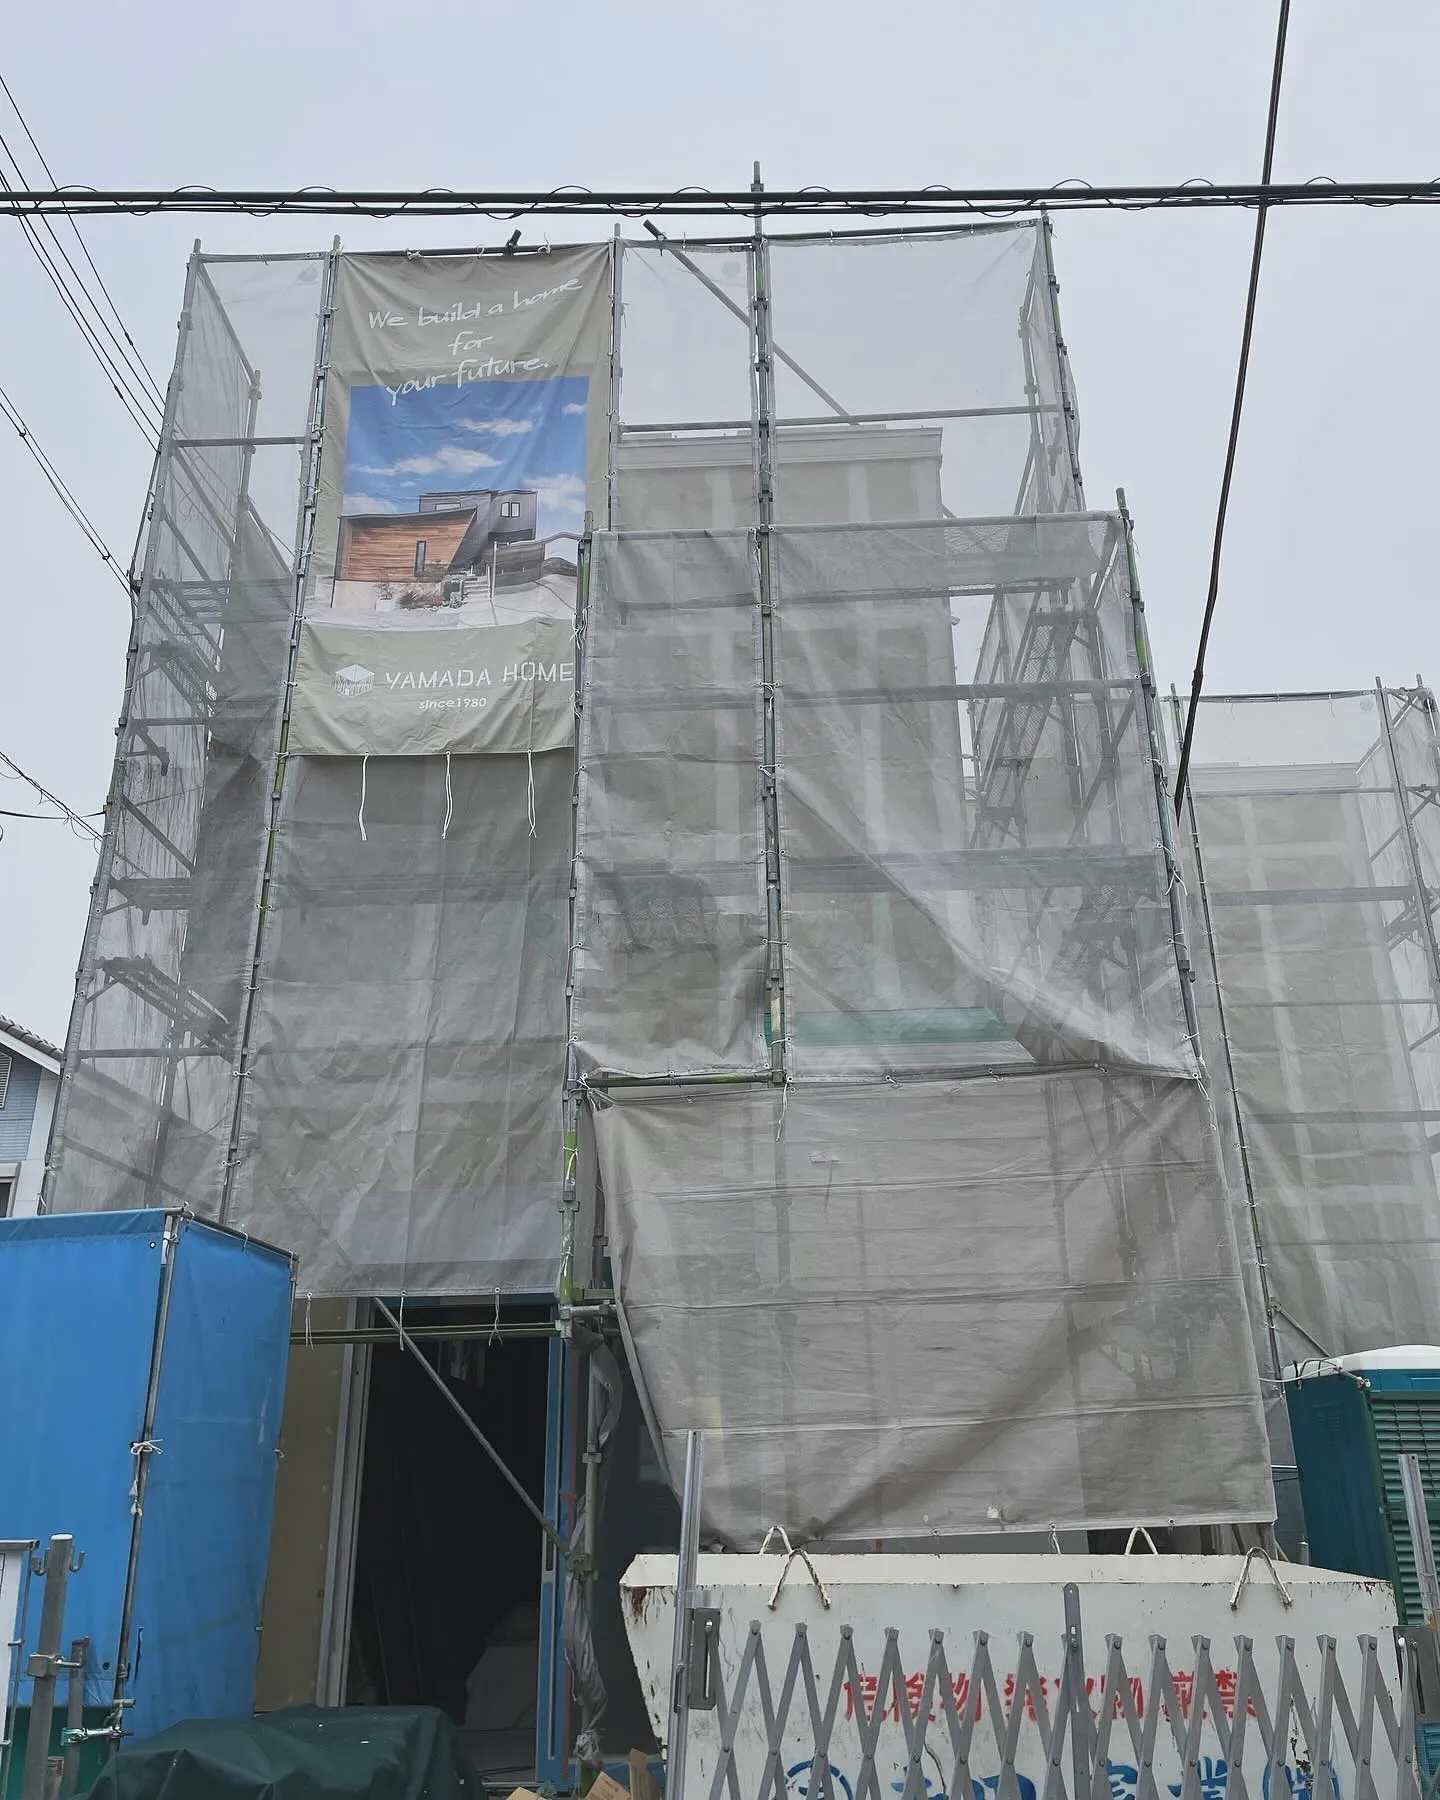 神戸と三木にある薬局の新店舗建設についてお知らせします。